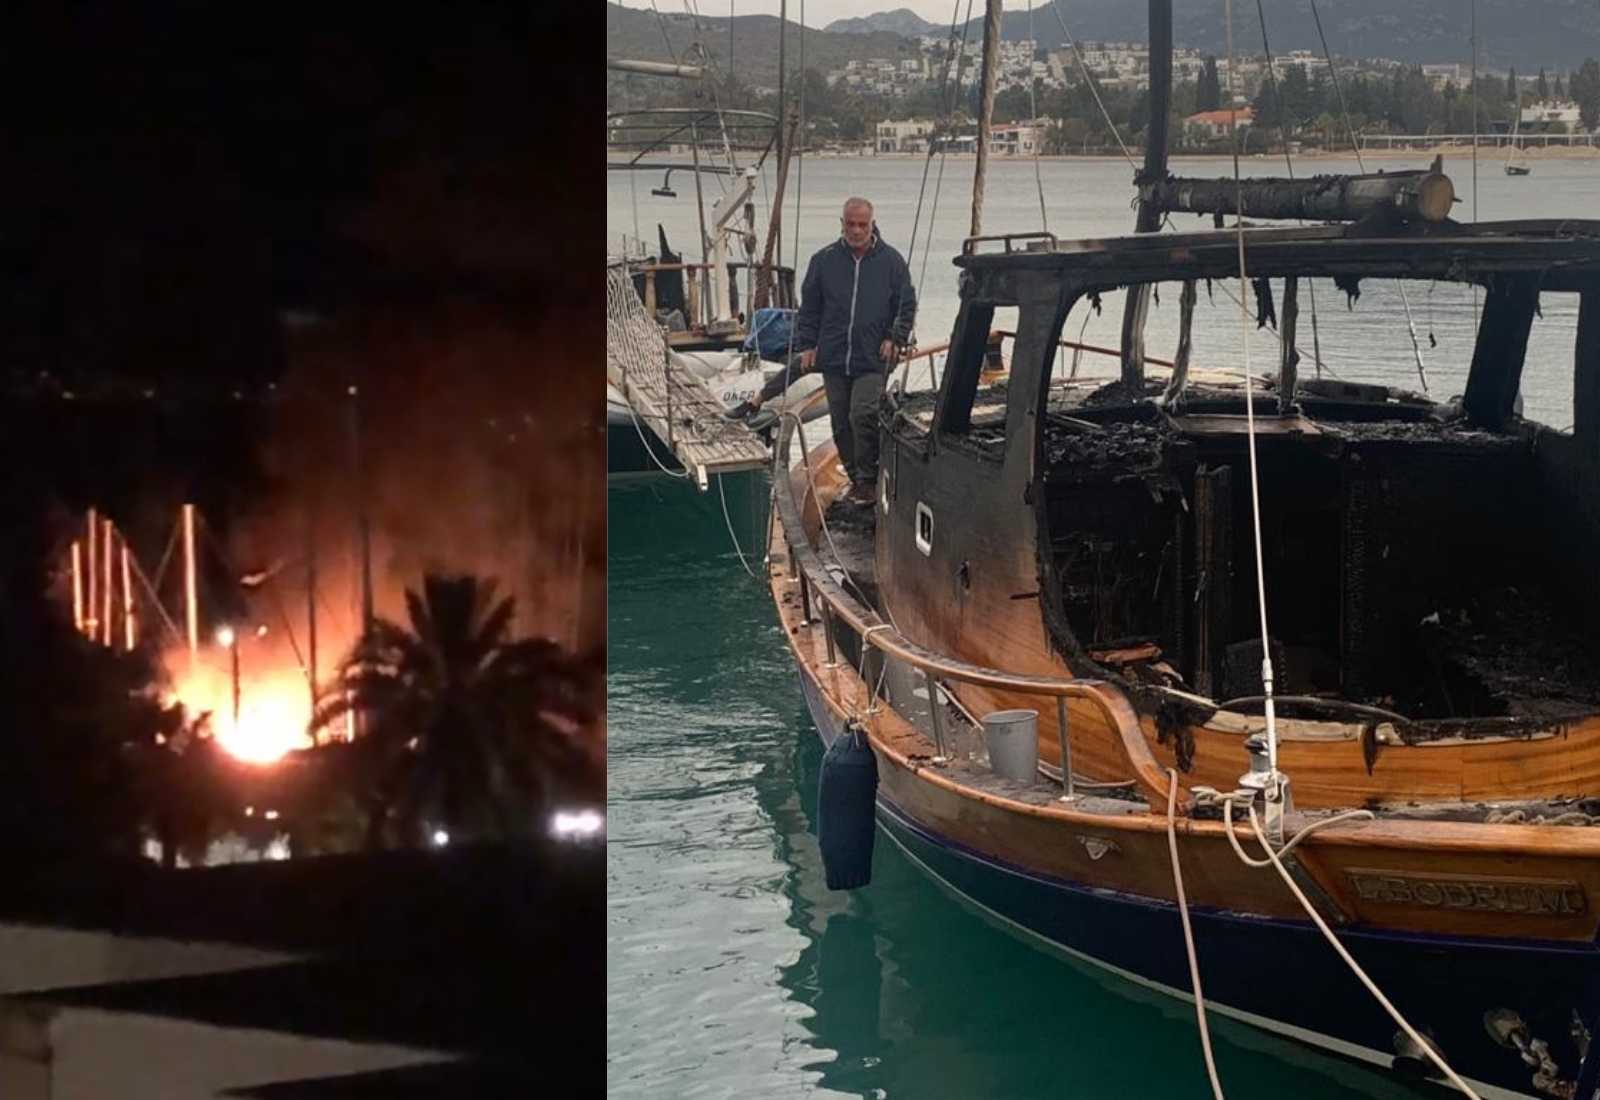 SON DAKİKA! Bitez’de ahşap tekneler alev alev yandı! 